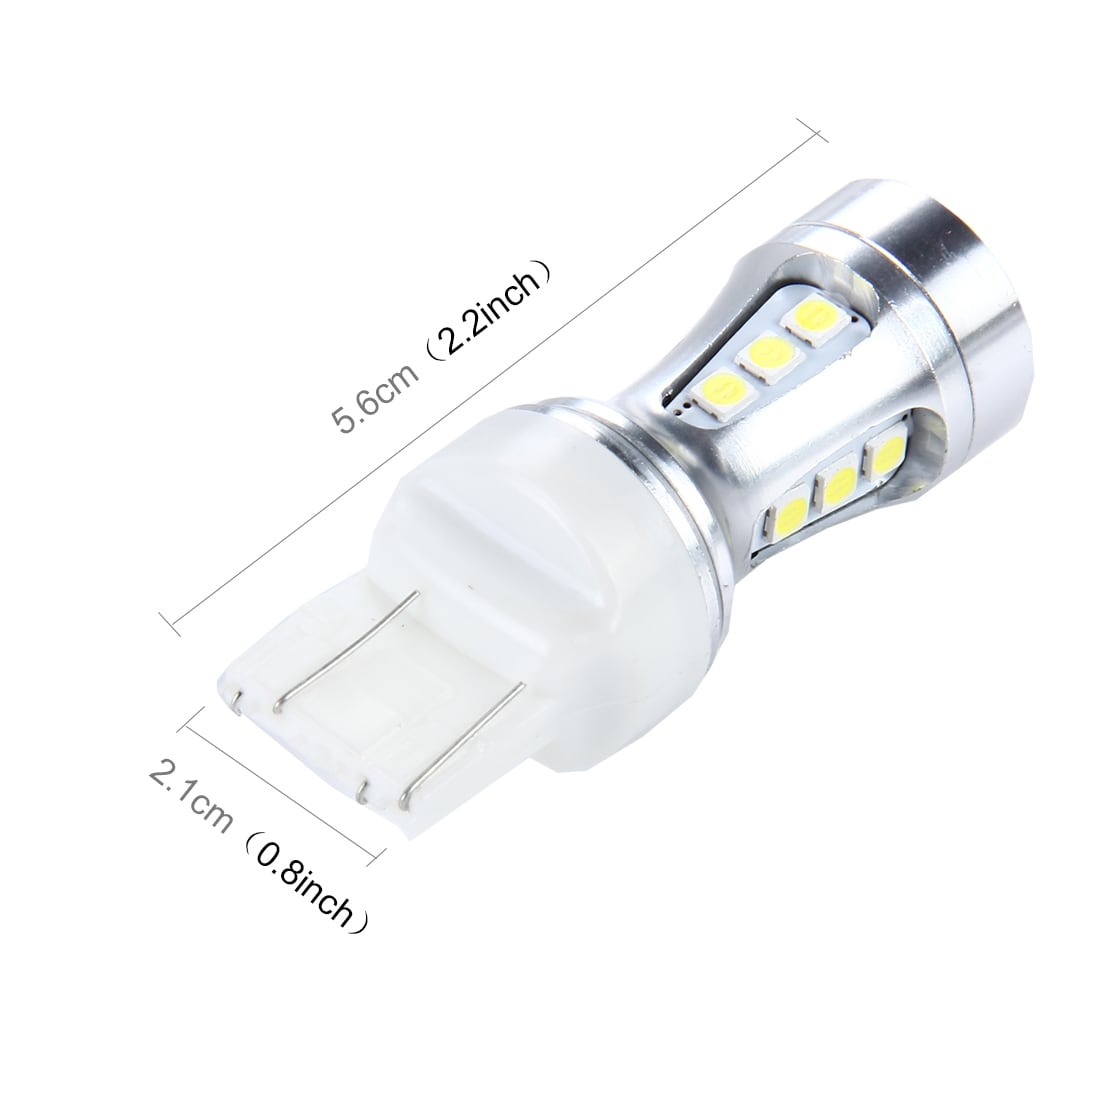 LED lampa 7443 10W 1000LM 18 SMD-3030 Positionsljus / bromsljus - 2Pack